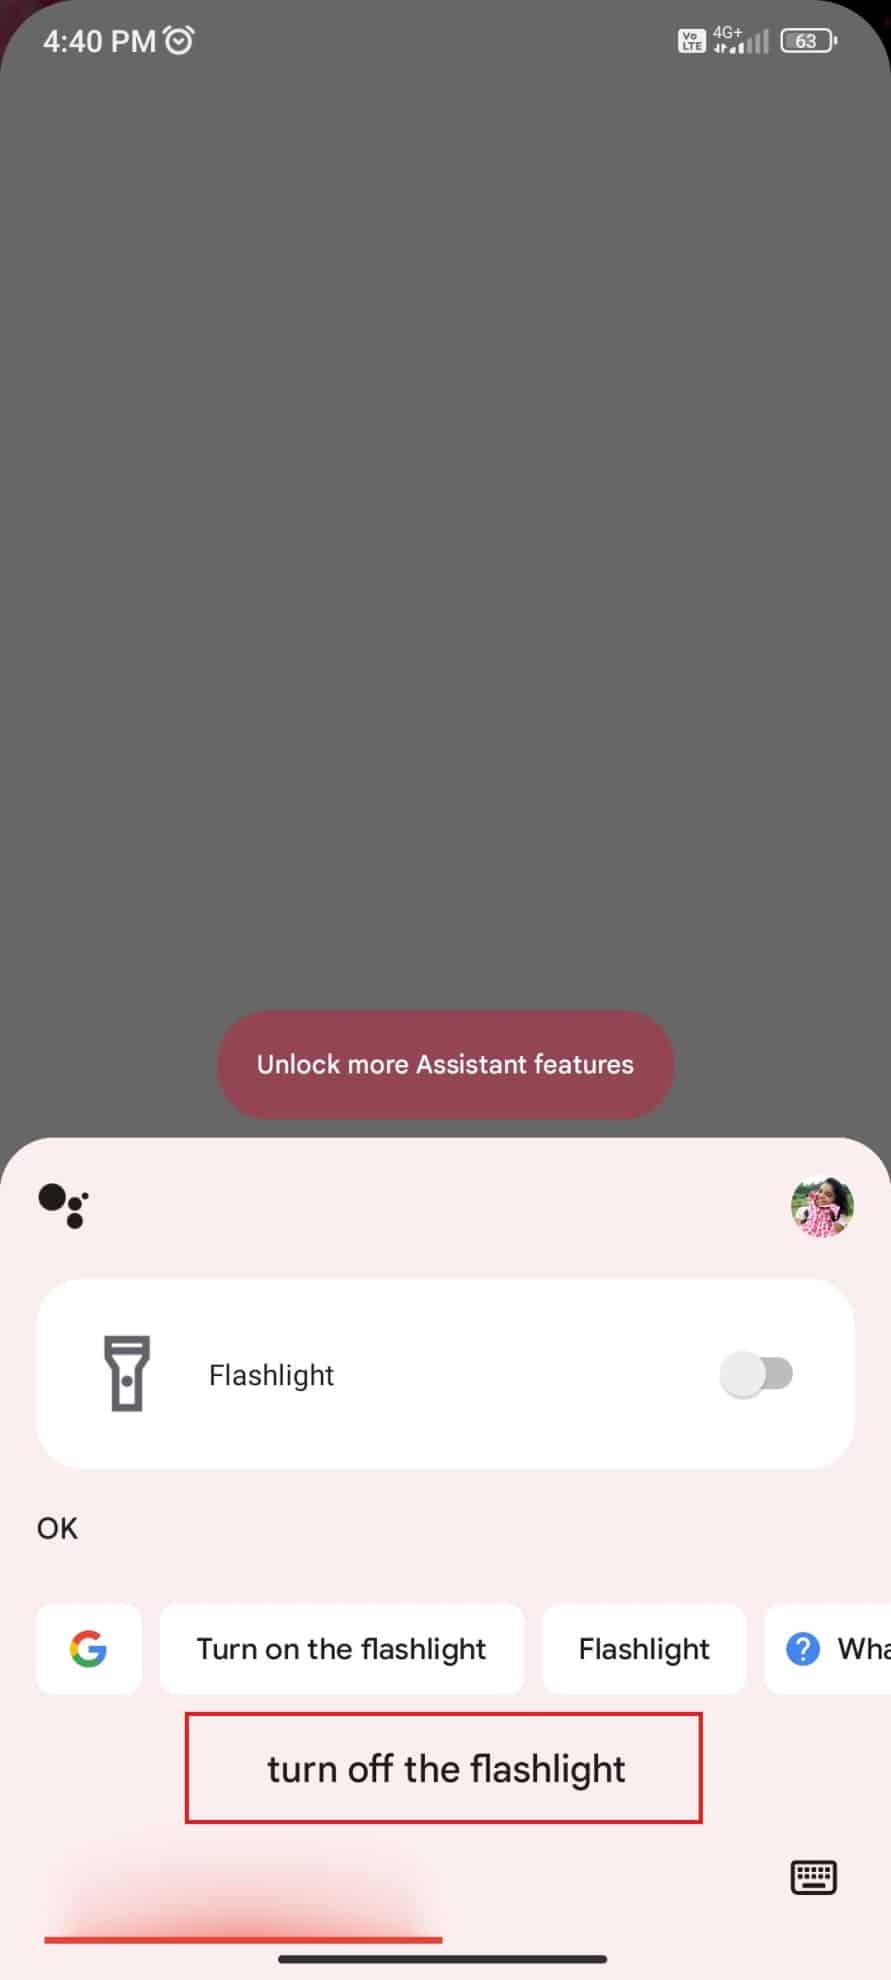 ปิดไฟฉายโดยใช้ Google Assistant